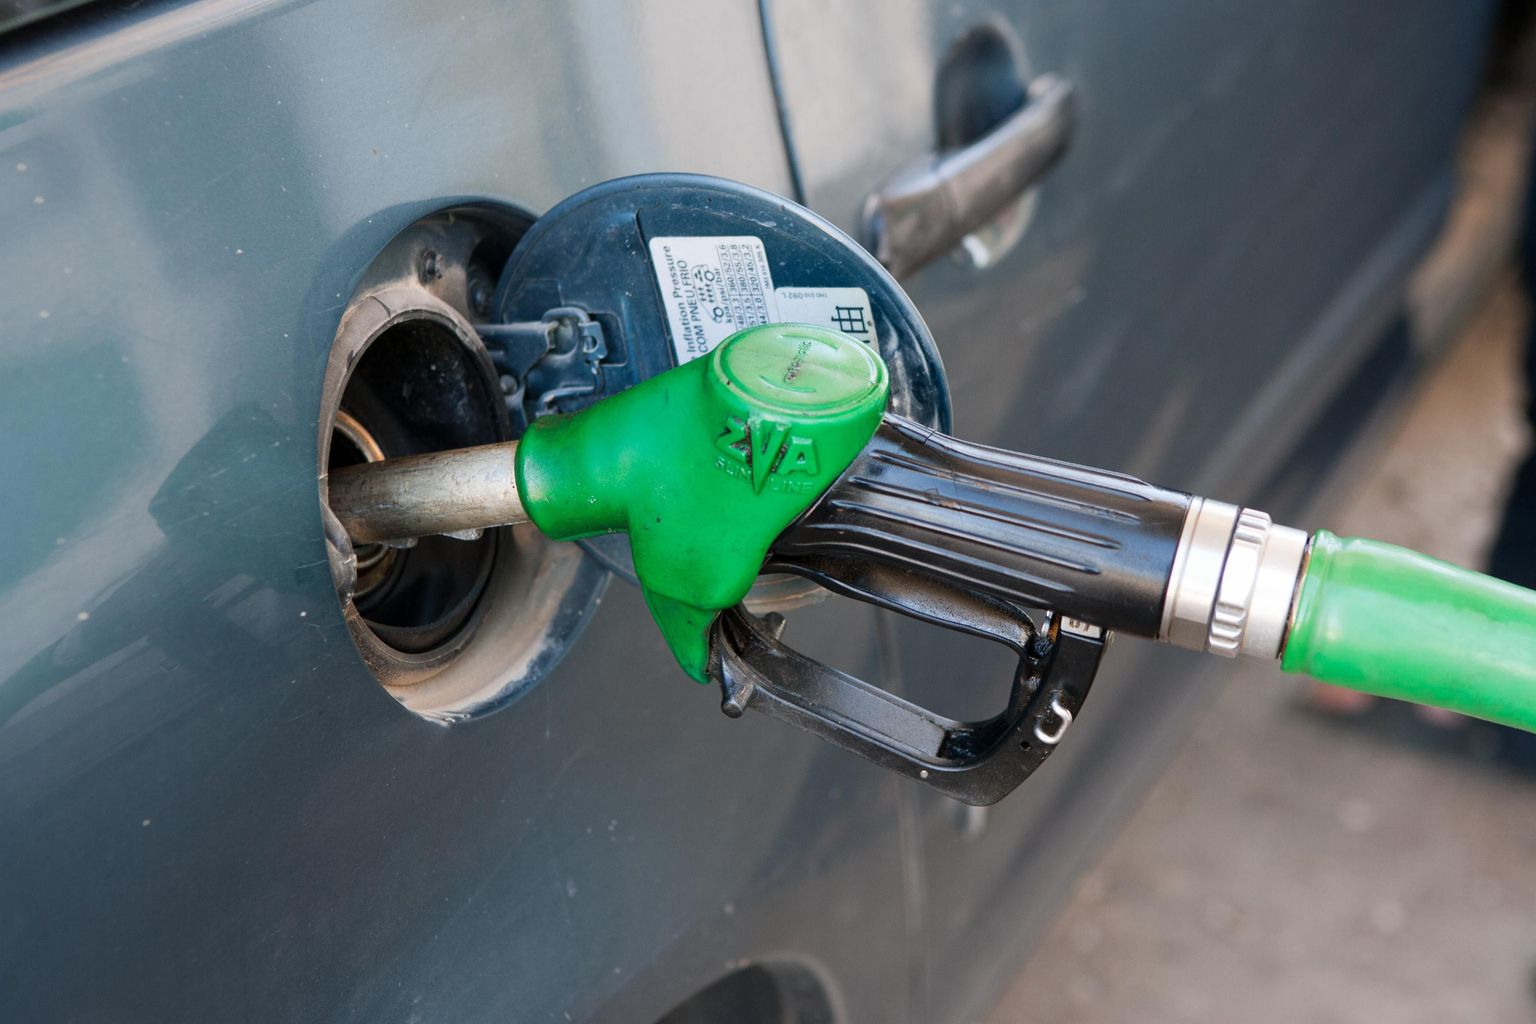 Nädala lõpus on kütuse hinnad tavaliselt soodsamad. Nädala alguses kihutatakse need jälle üles.